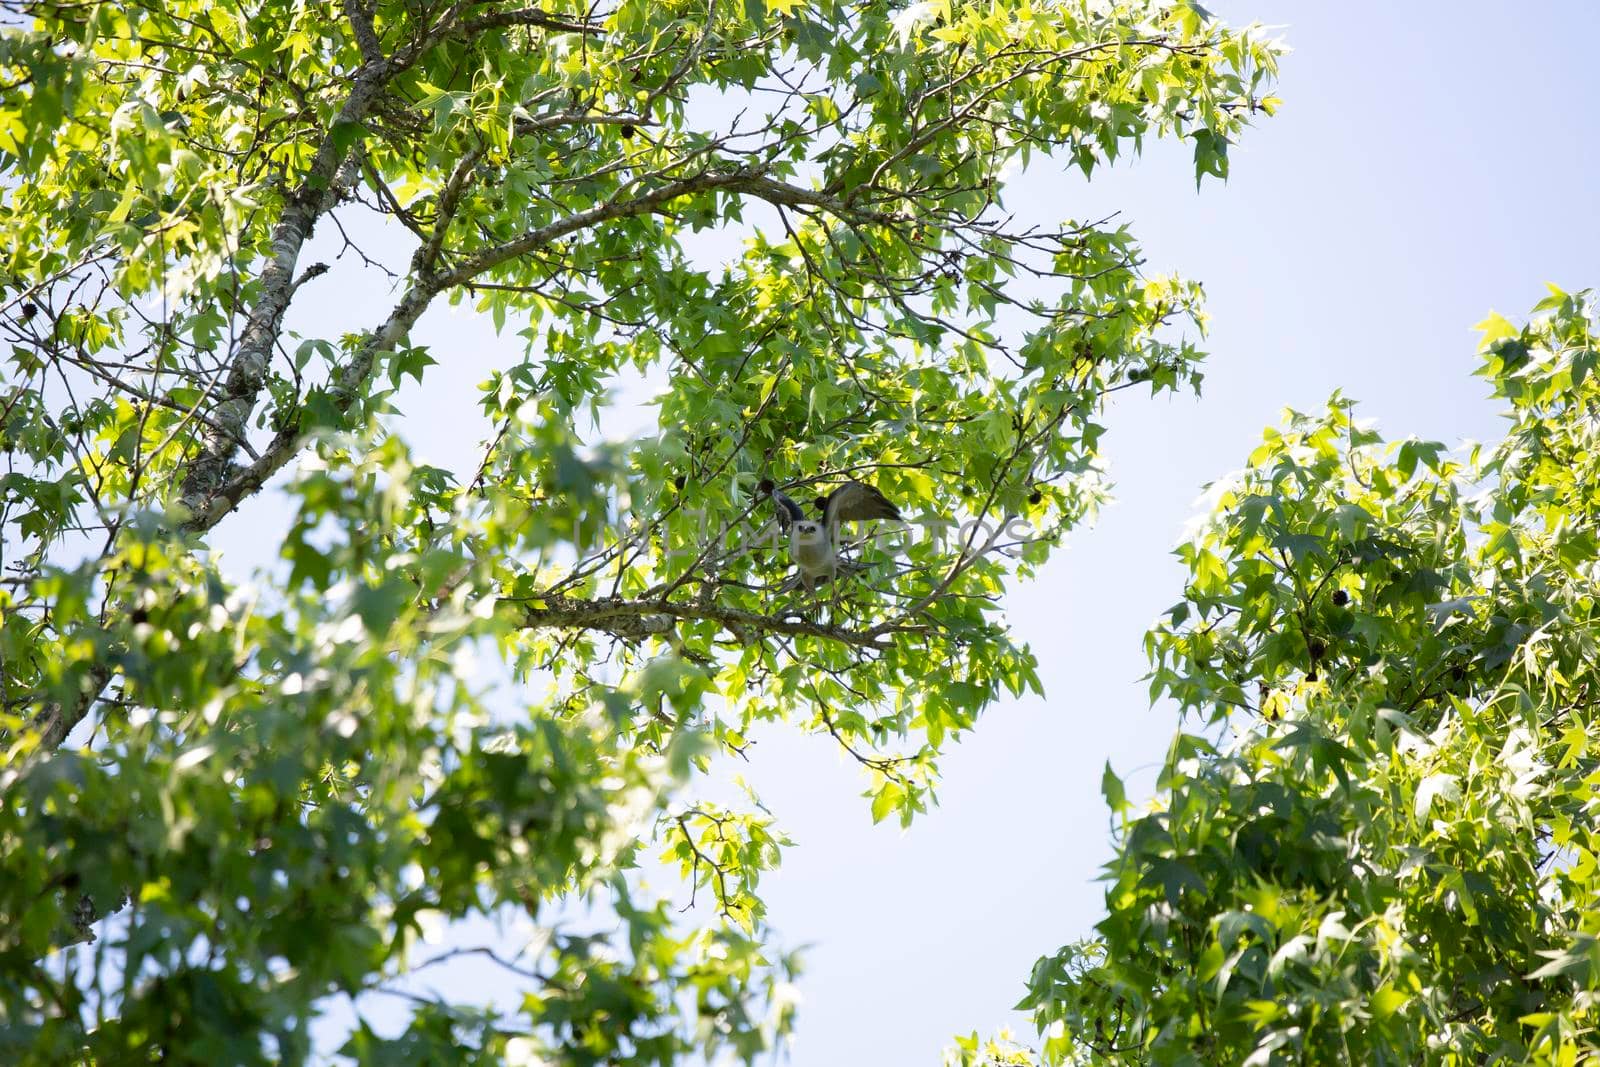 Majestic Mississippi kite (Ictinia mississippiensis) taking flight from a tree limb